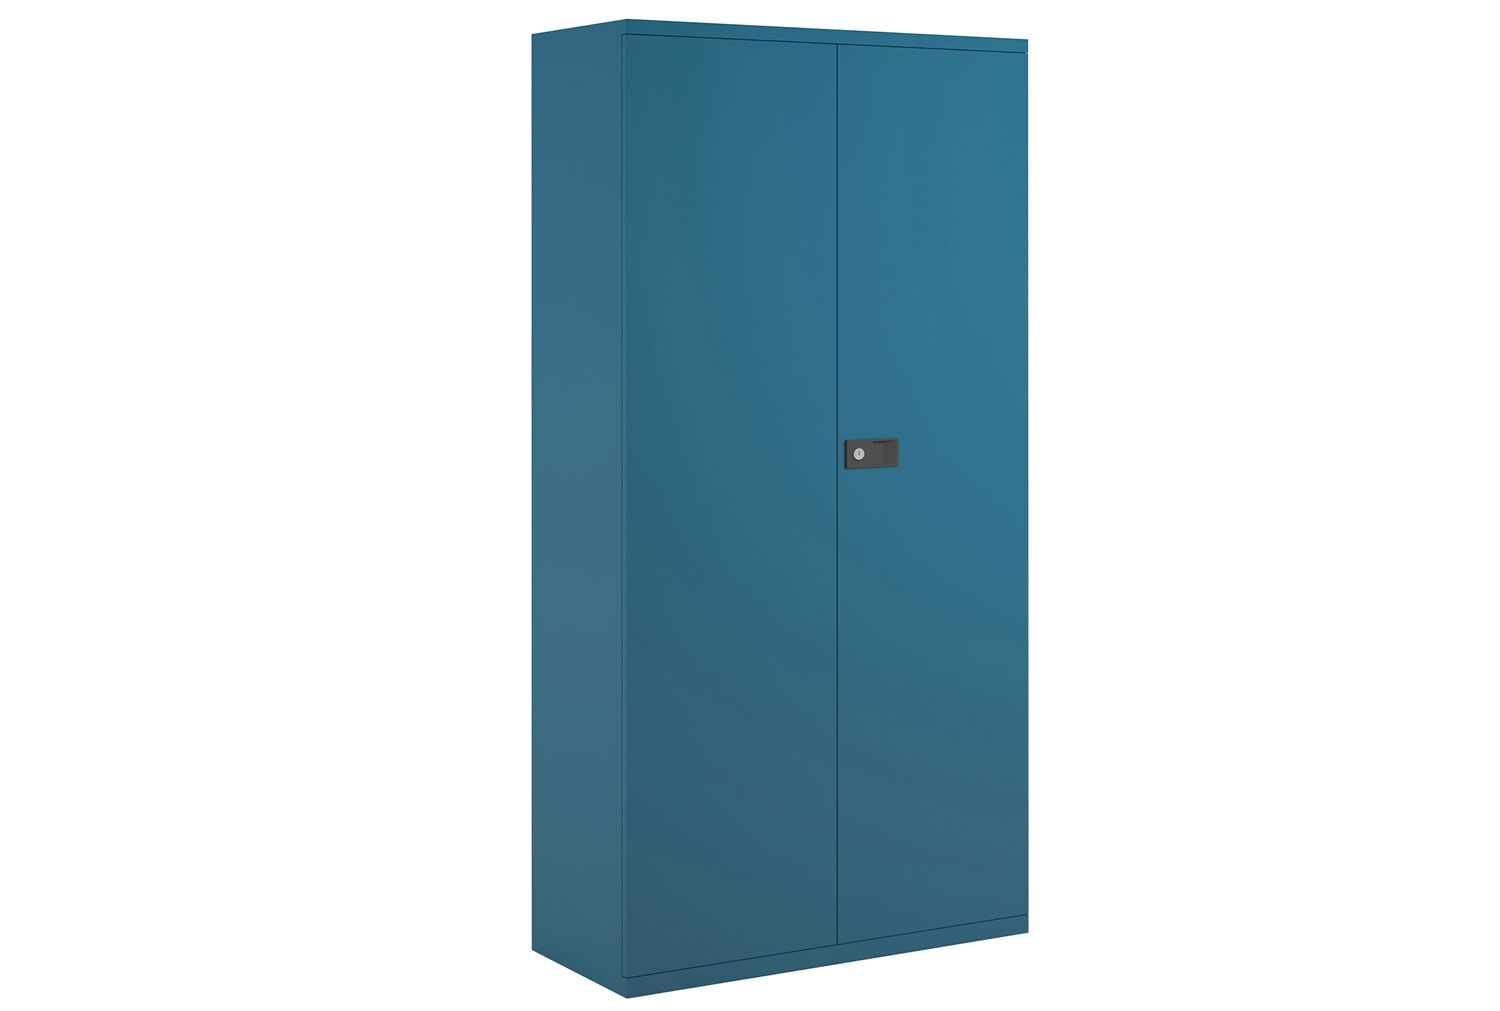 Bisley Economy Double Door Steel Office Cupboards, 4 Shelf - 91wx40dx197h (cm), Blue